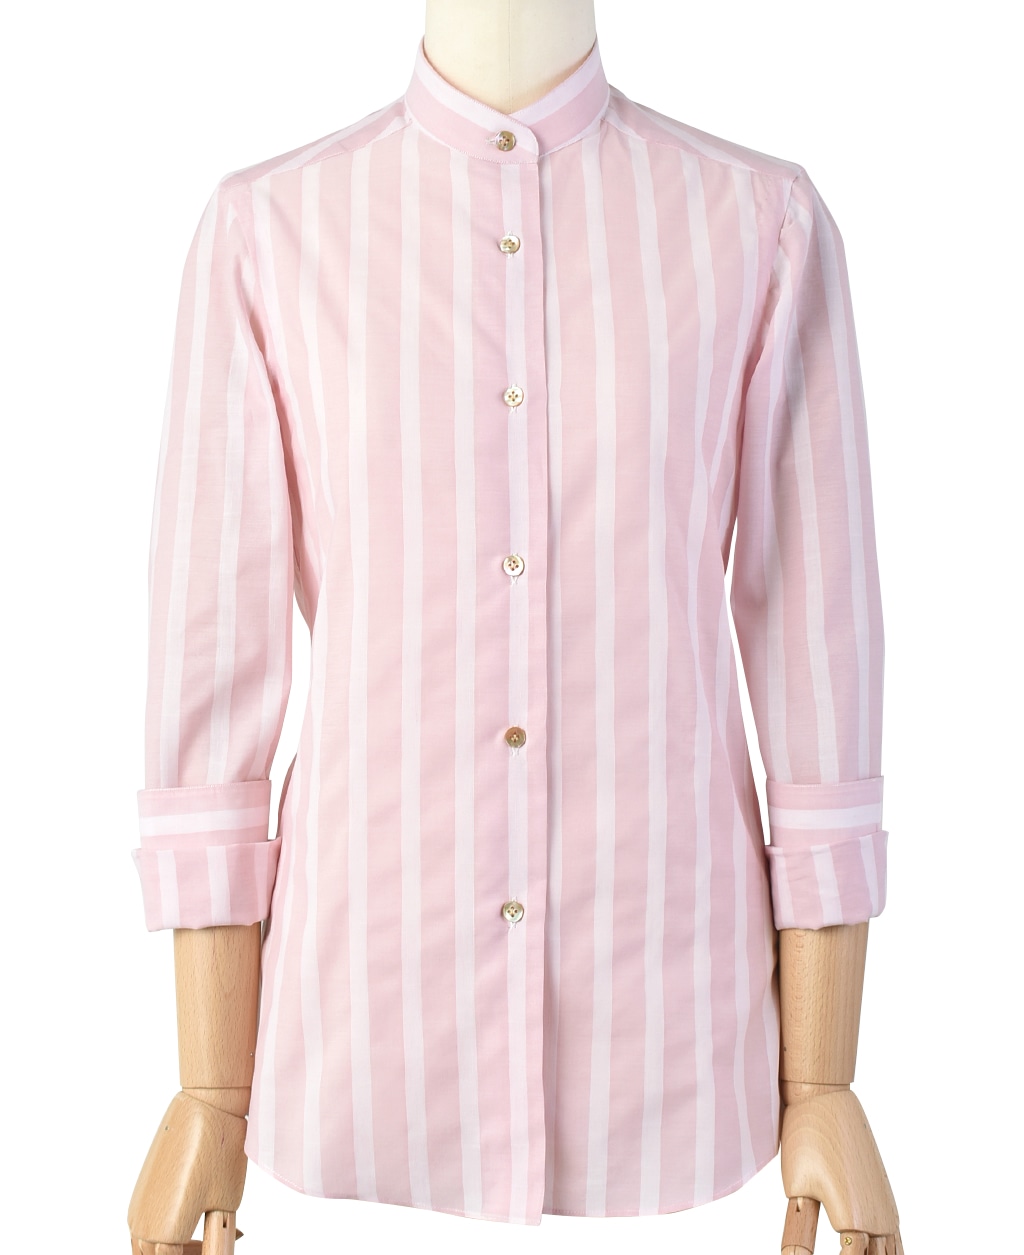 ナポリウーマンシャツ 38サイズ 5 7号 ピンク系 レディース メーカーズシャツ鎌倉 公式通販 日本製ワイシャツ ネクタイ ブラウス